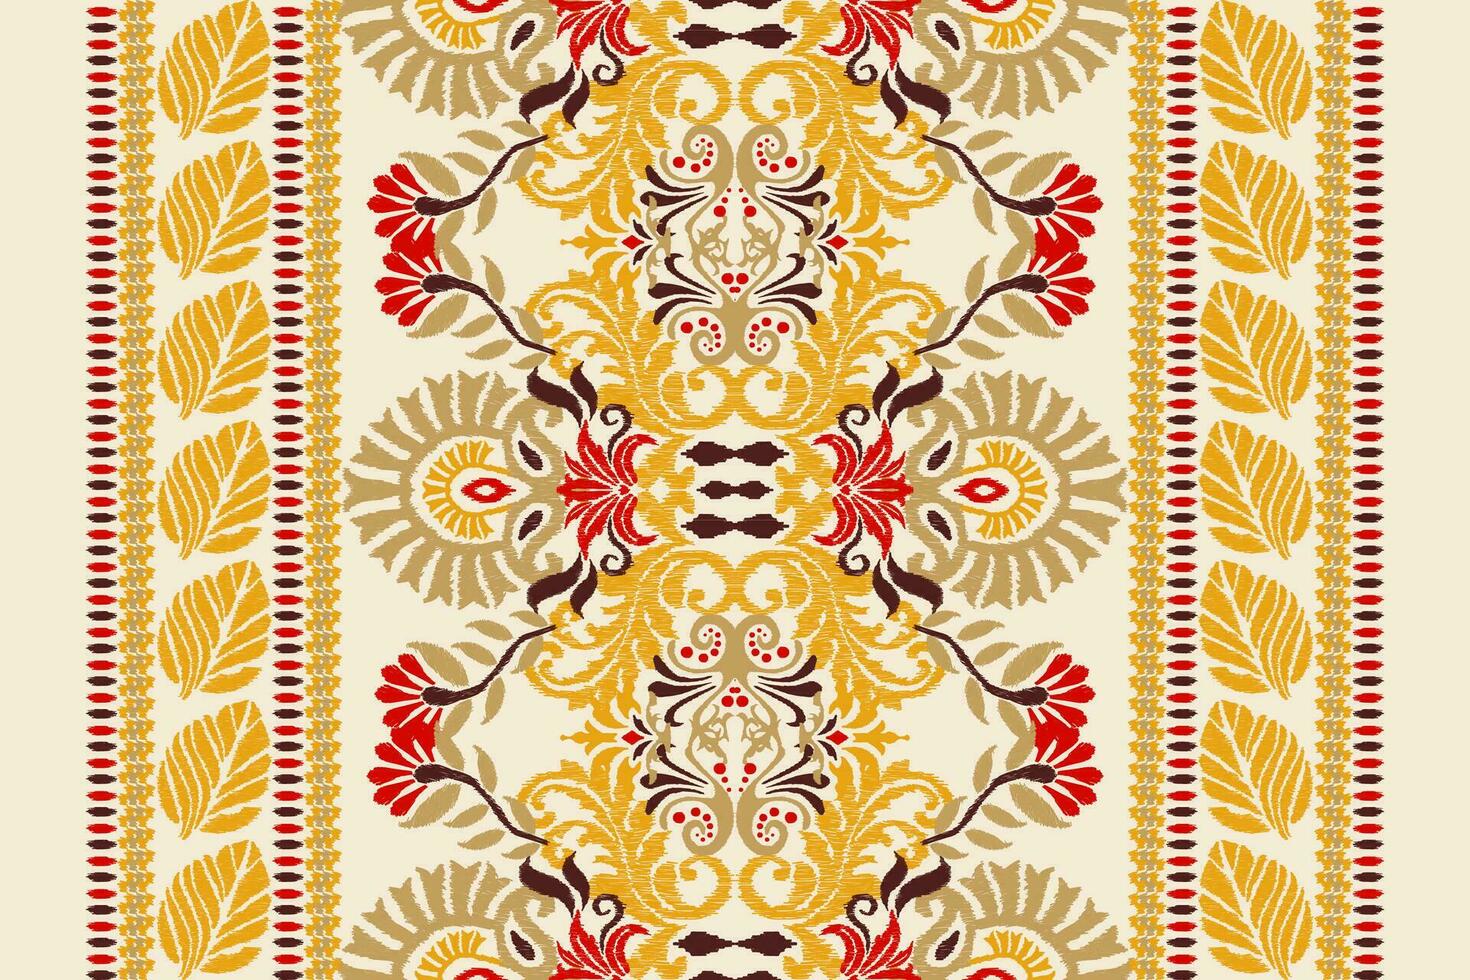 ikat floral paisley broderie sur blanc background.ikat ethnique Oriental modèle traditionnel.aztèque style abstrait vecteur illustration.design pour texture,tissu,habillement,emballage,décoration,écharpe,tapis